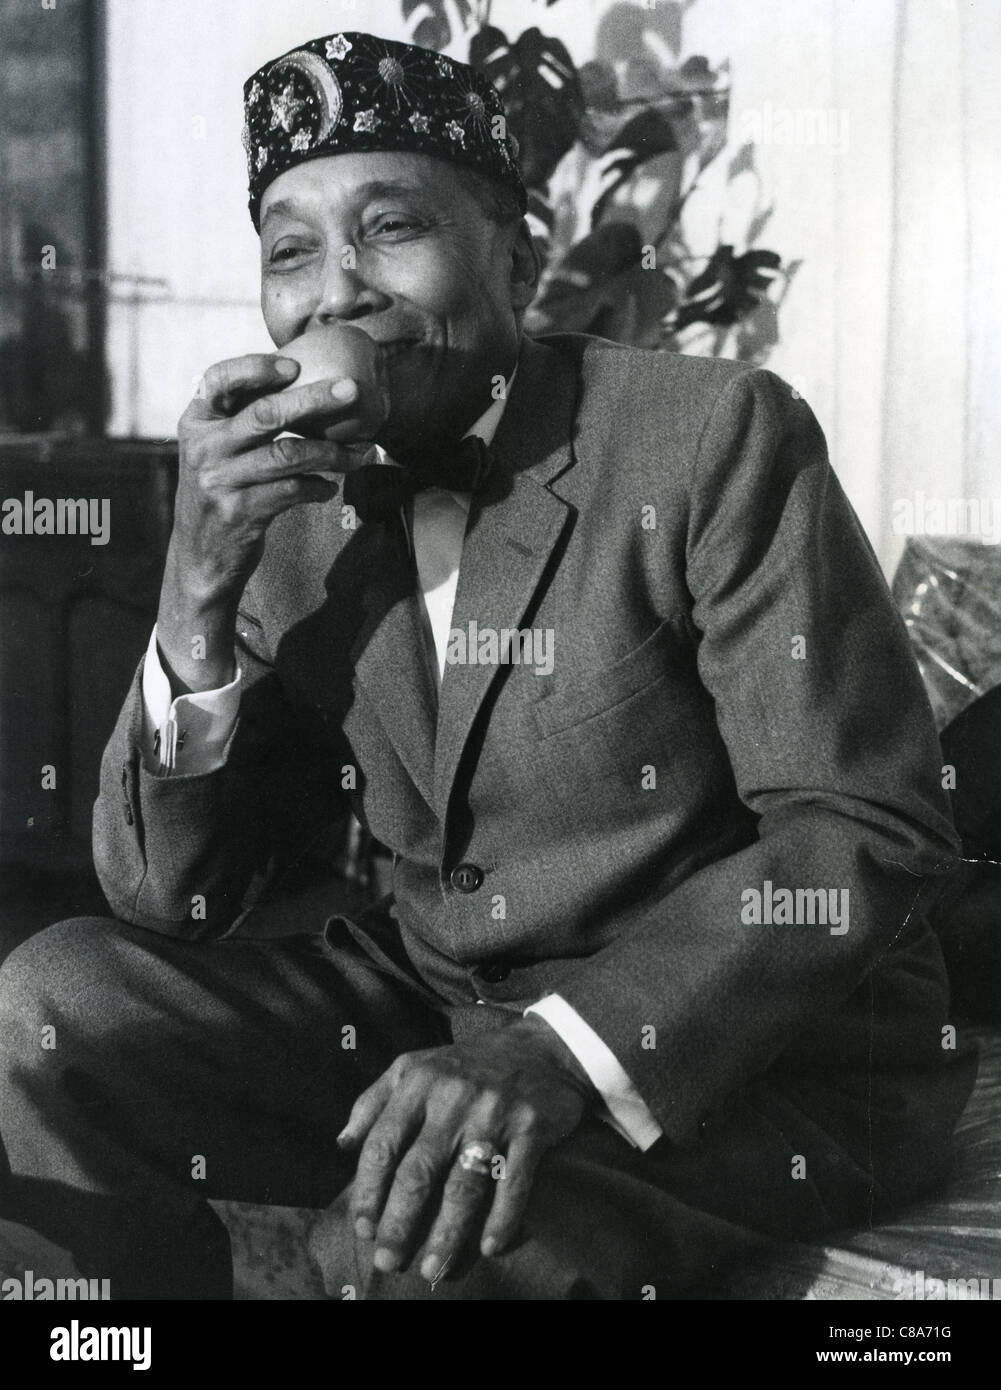 ELIJAH MUHAMMAD (1897-1975) dirigente americano africano de la Nación del Islam. Foto de Robert Lucas Foto de stock